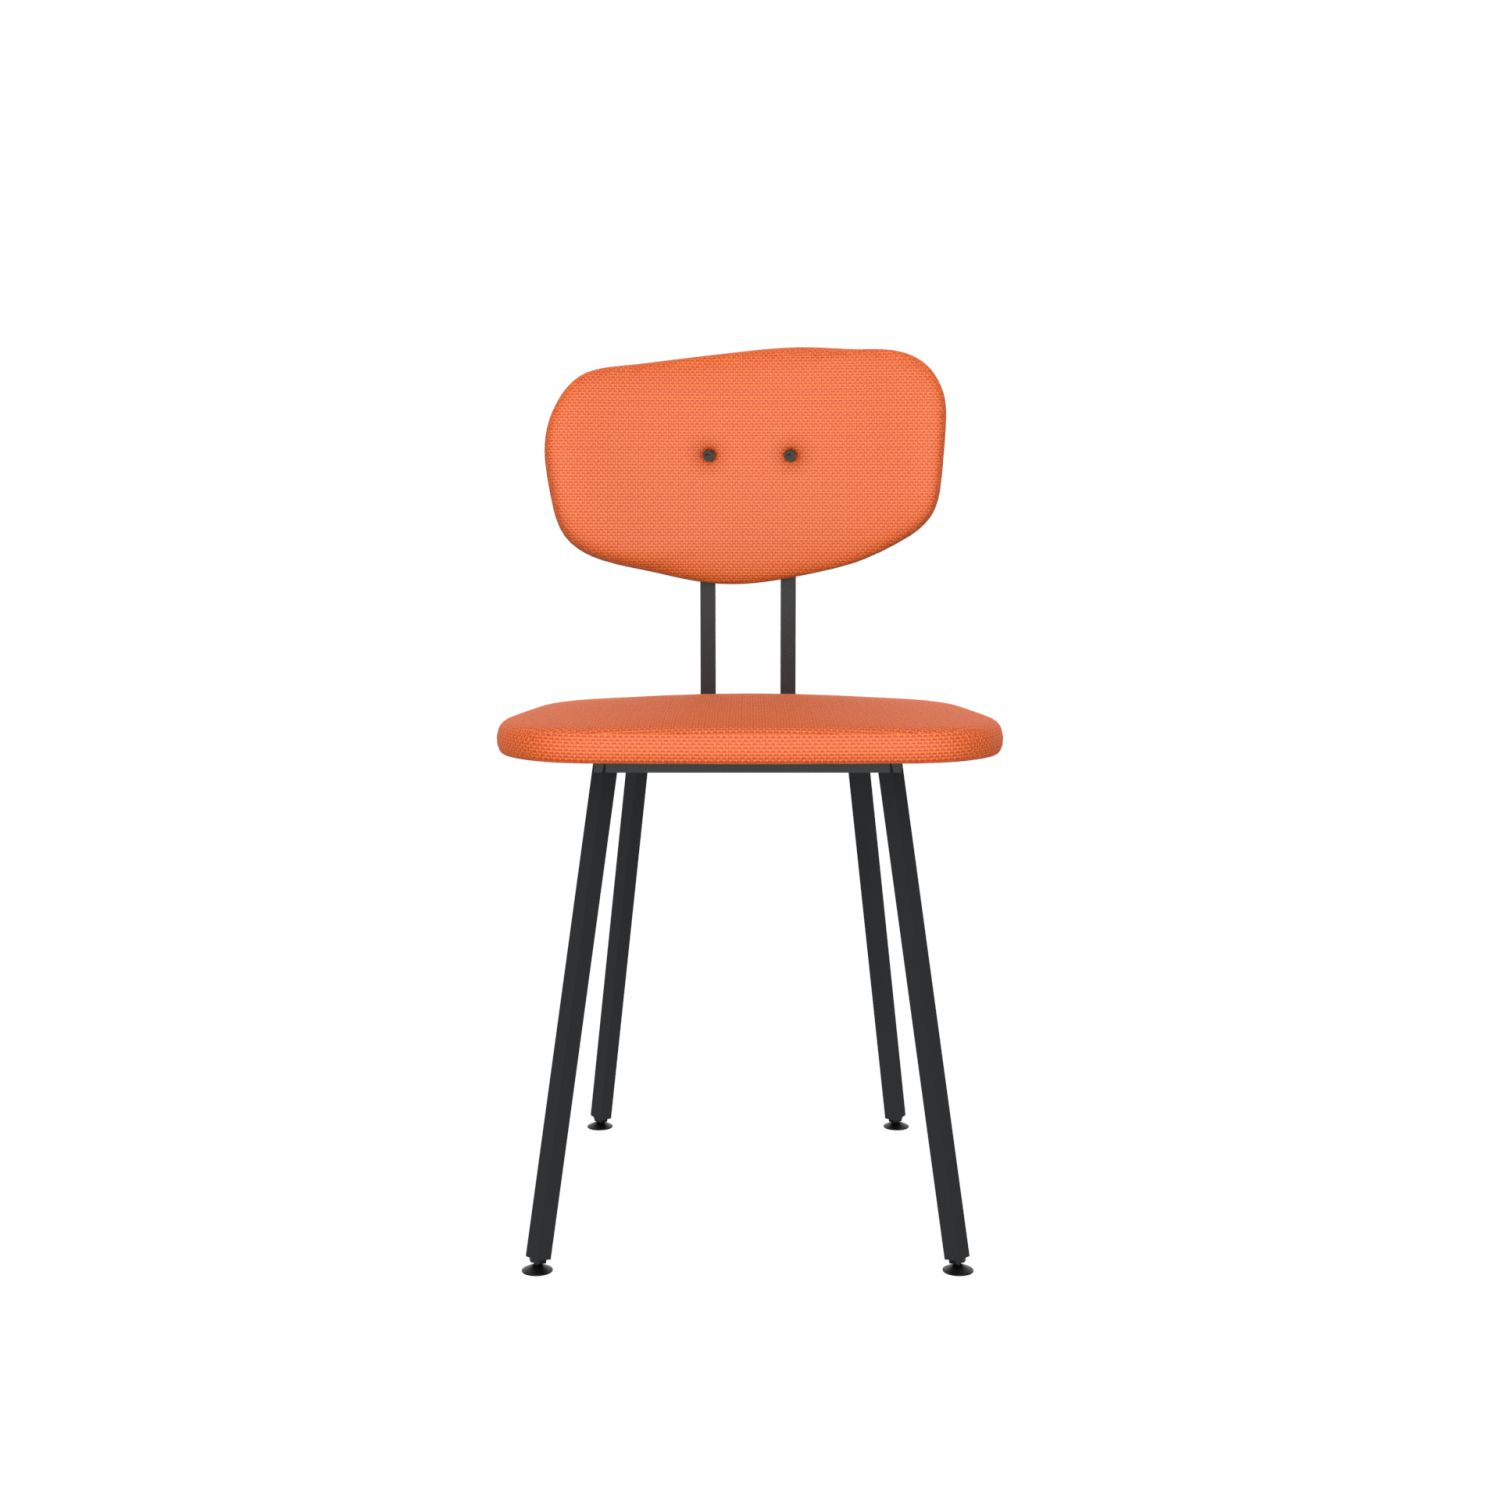 lensvelt maarten baas chair 101 not stackable without armrests backrest c burn orange 102 black ral9005 hard leg ends